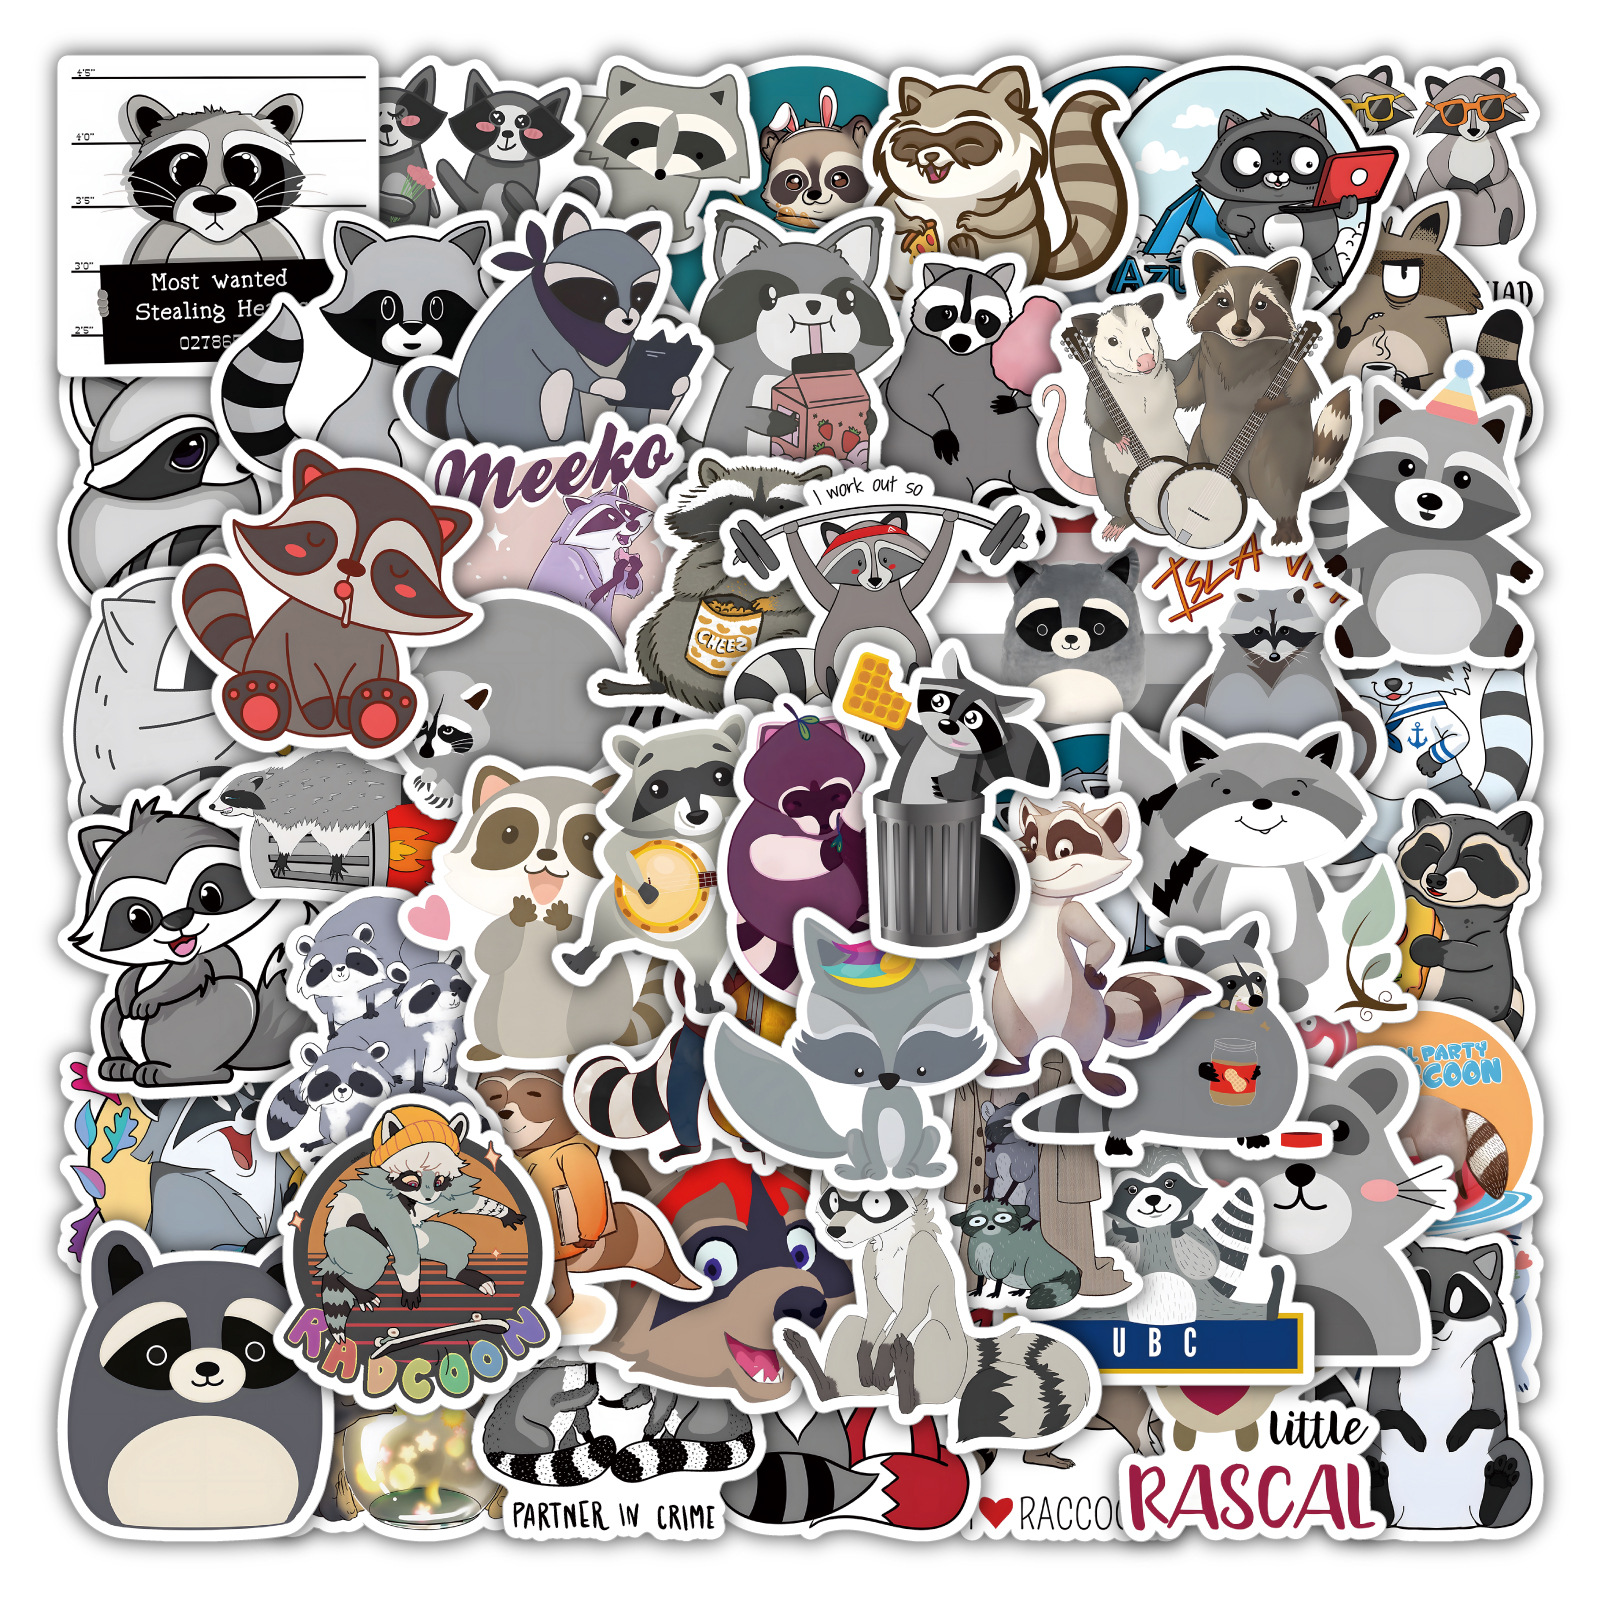 100 pcs Raccoon Sticker Laptop Skateboard doodle Waterproof Sticker